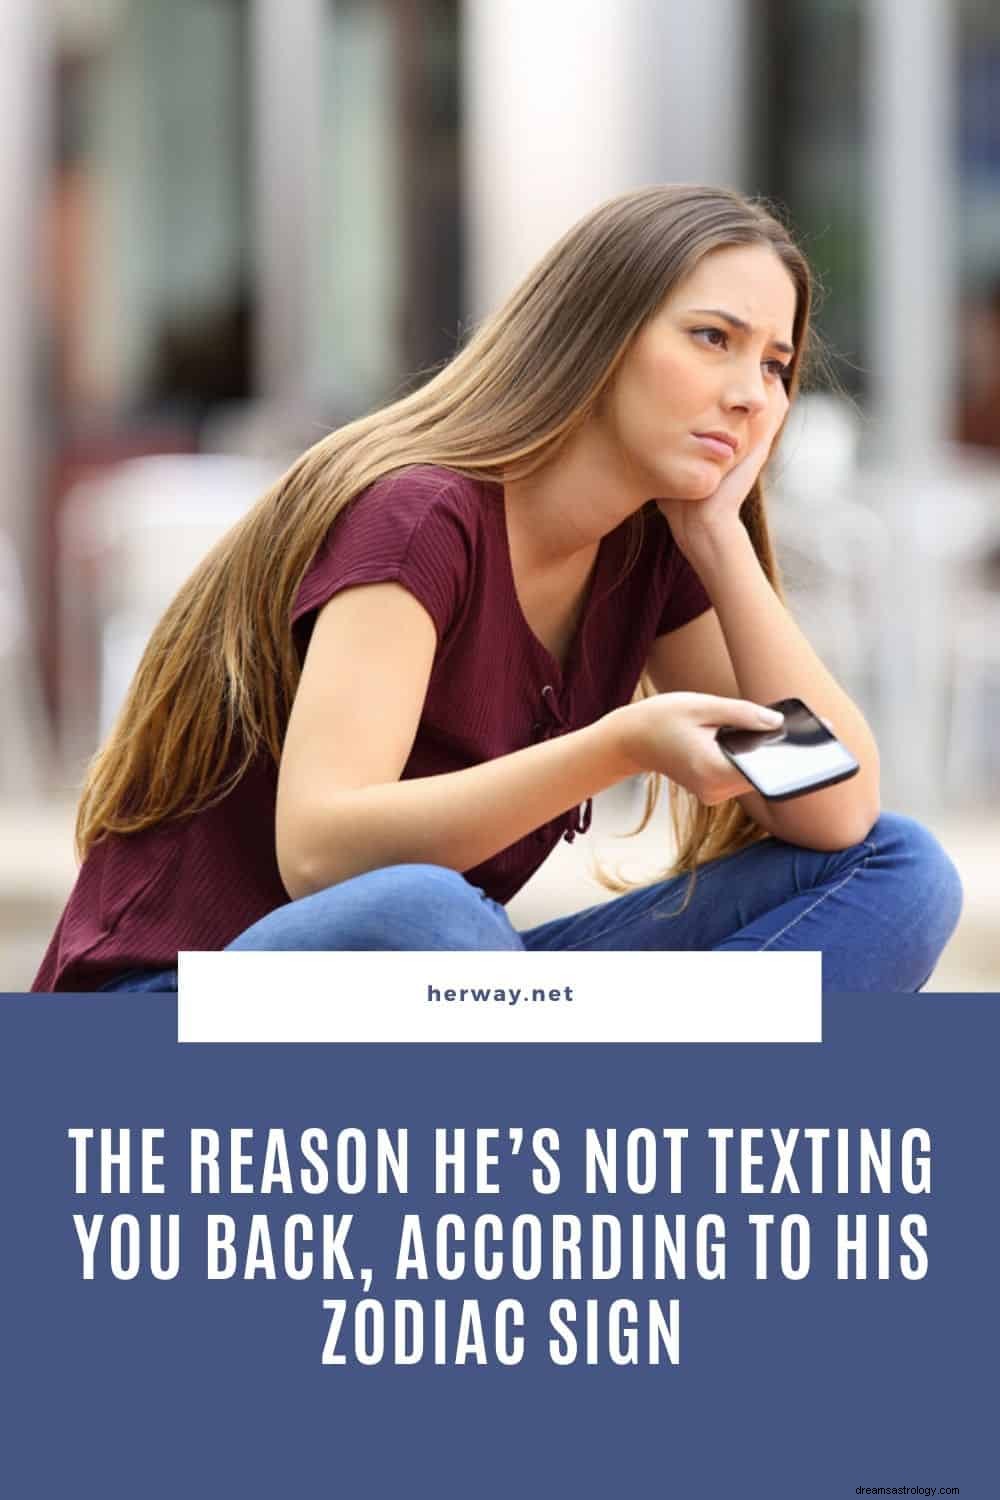 Důvod, proč vám podle jeho znamení zvěrokruhu neodesílá SMS